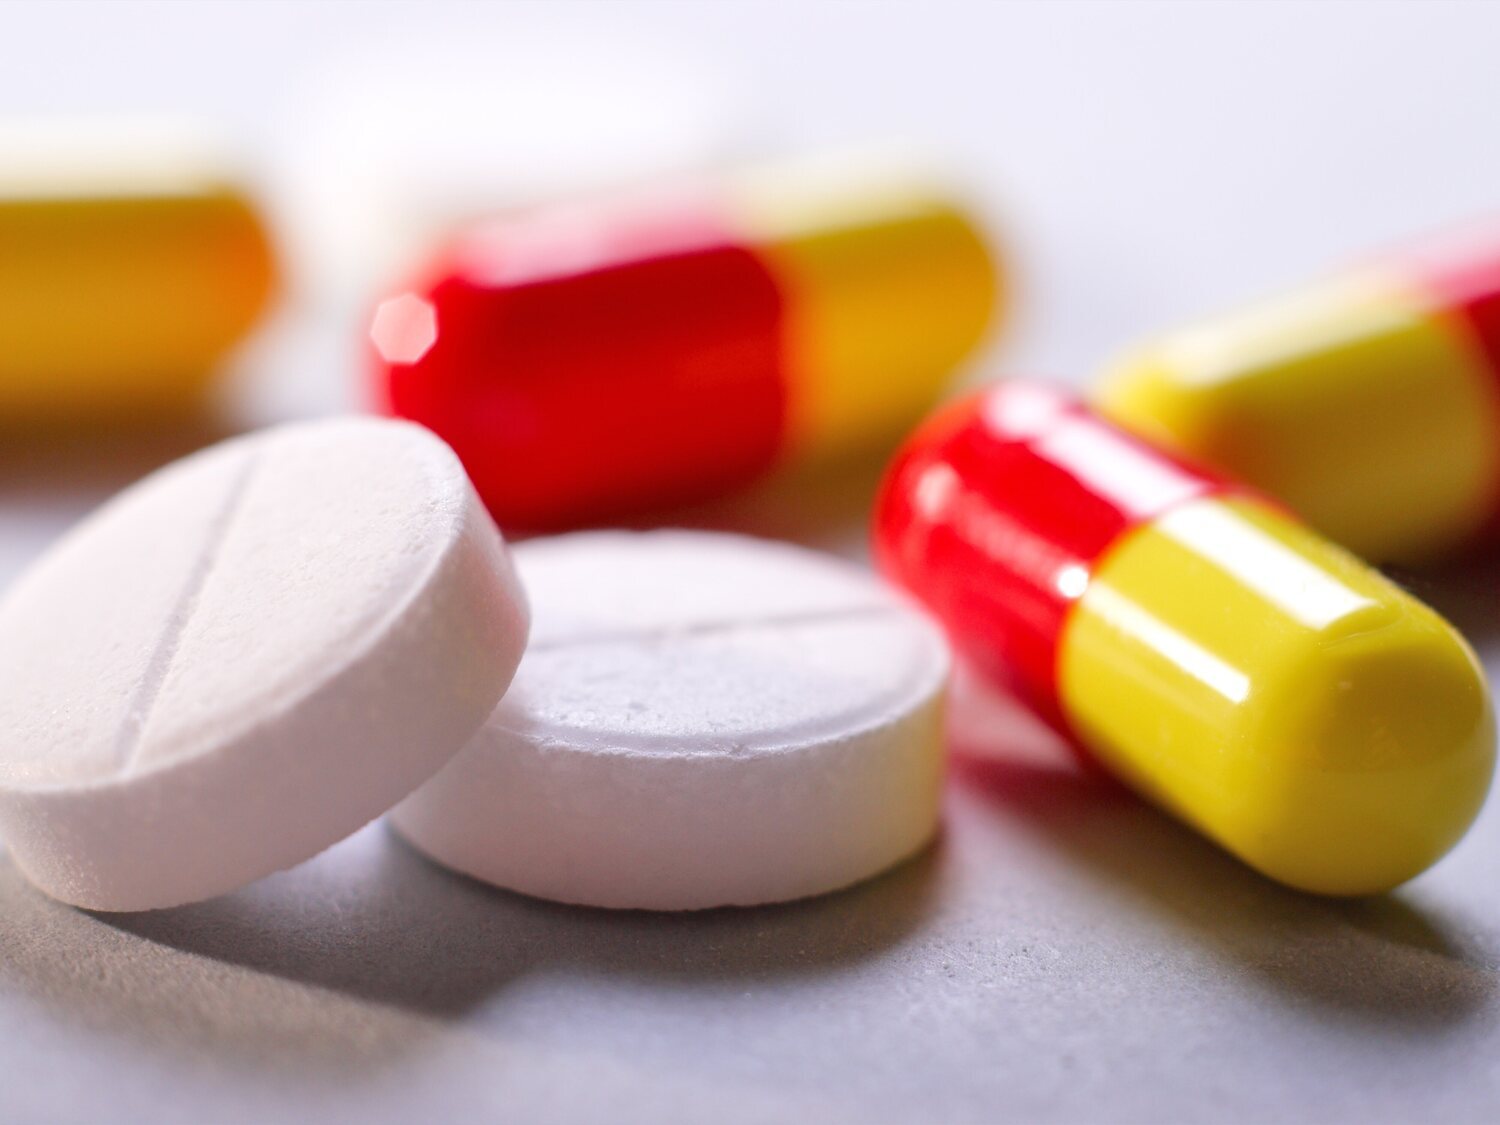 Alerta sanitaria por falta de estos conocidos medicamentos en todas las farmacias españolas